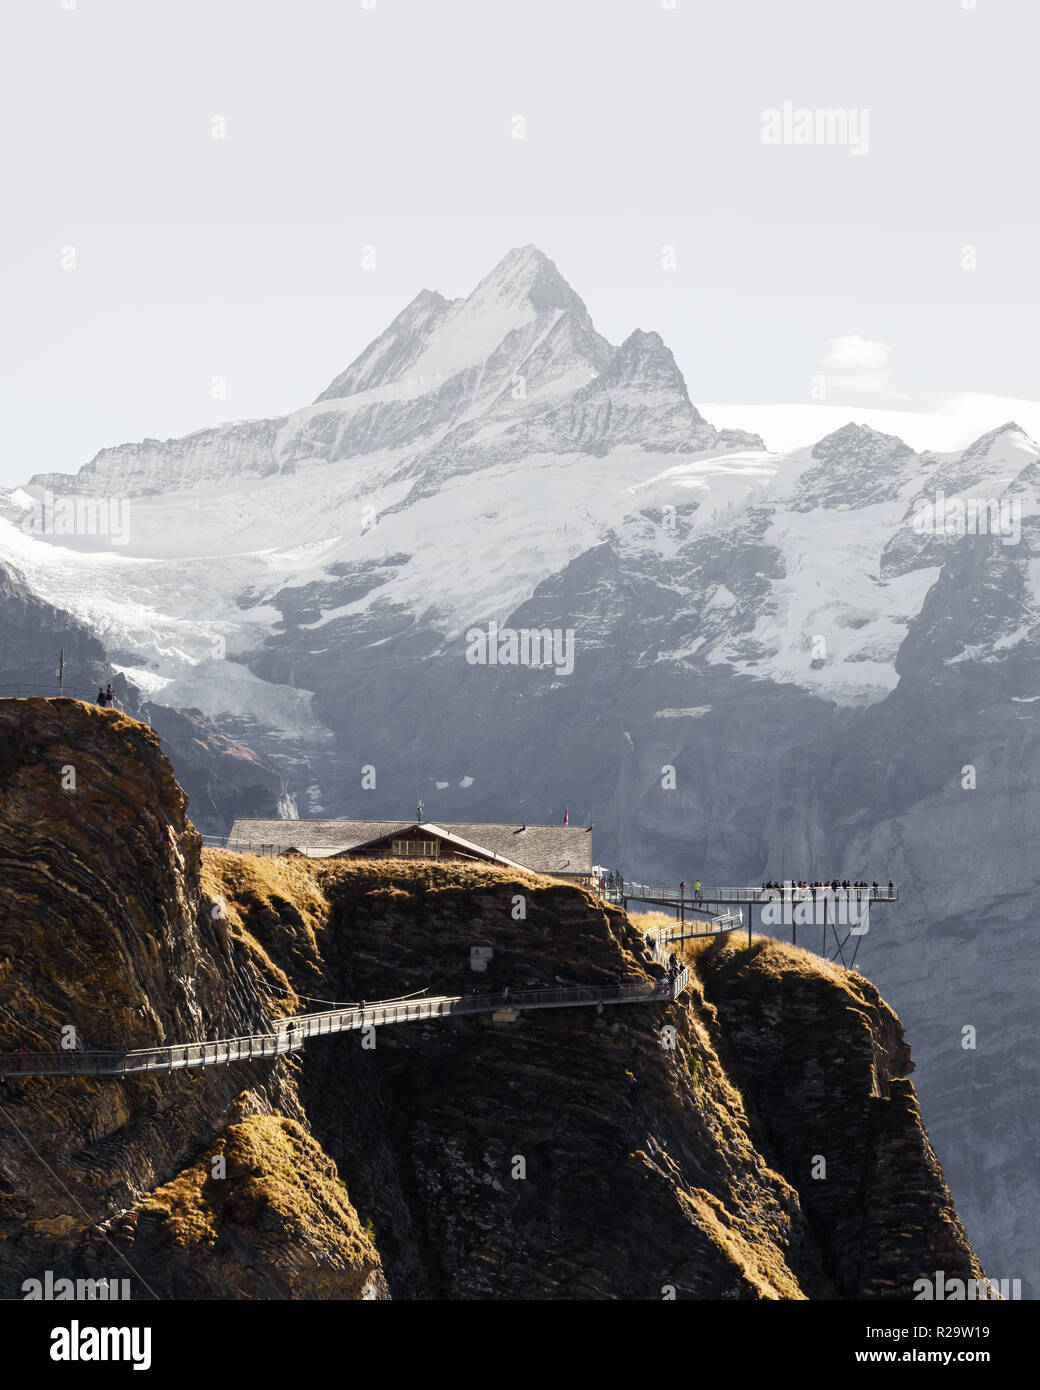 Extreme View Point auf der Oberseite der Firstbahn Grindelwald in den Schweizer Alpen. Snowy Schreckhorn Mountain Peak im Hintergrund. Berner Alpen Stockfoto